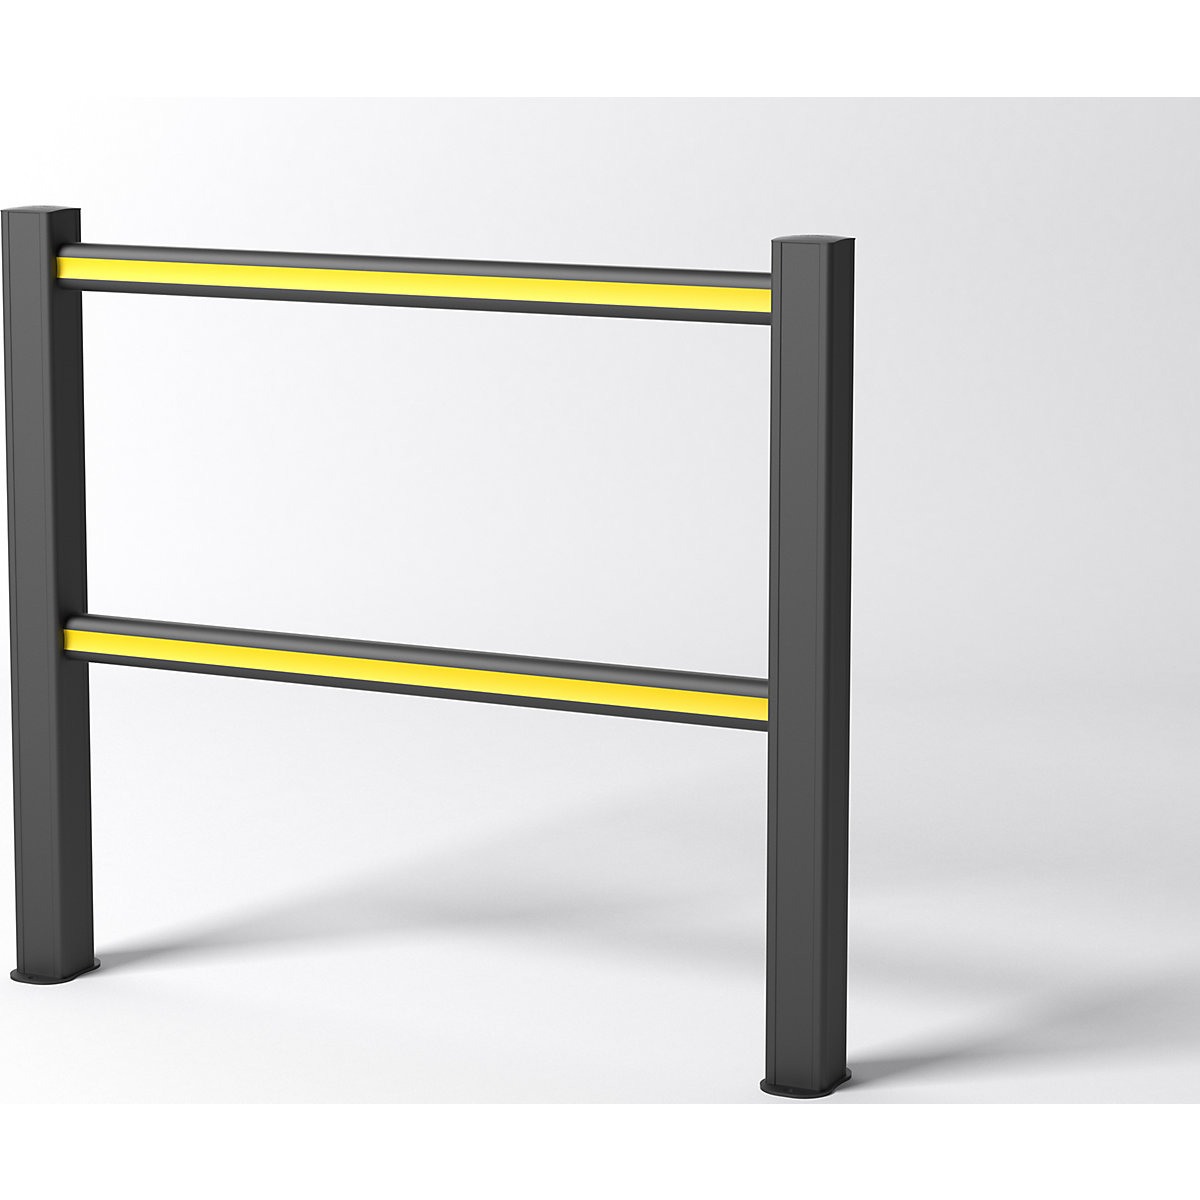 FLEX IMPACT Handlaufsystem, schwarze Pfosten – schwarz/gelbe Streben, Breite 1250 mm